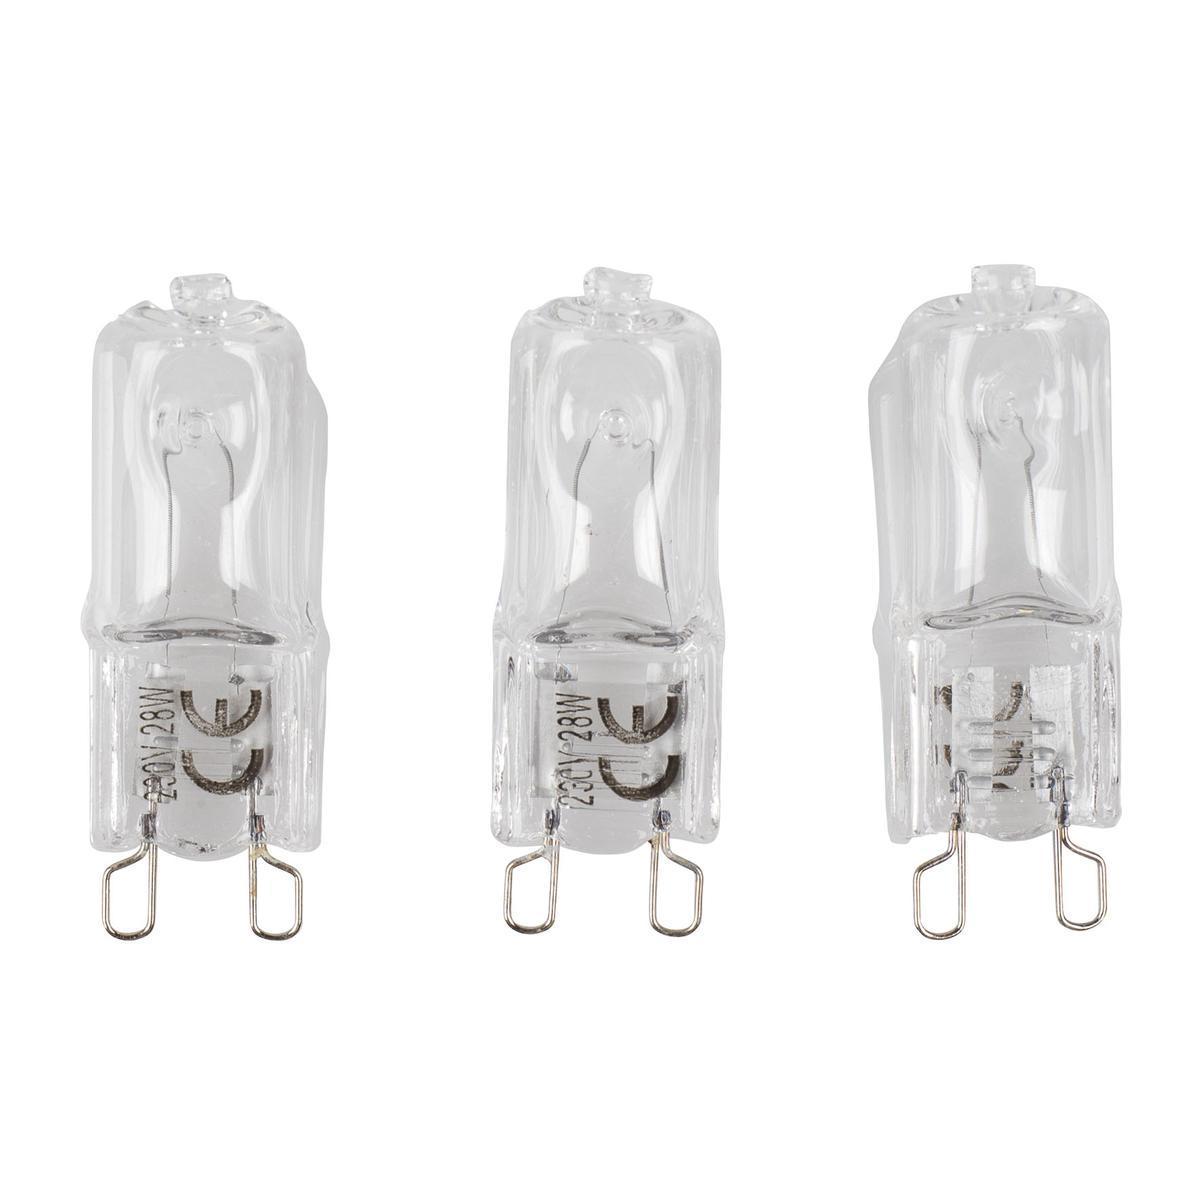 3 ampoules halogènes à économie d'énergie G9 - 12 x 1.5 x 14 cm - Transparent